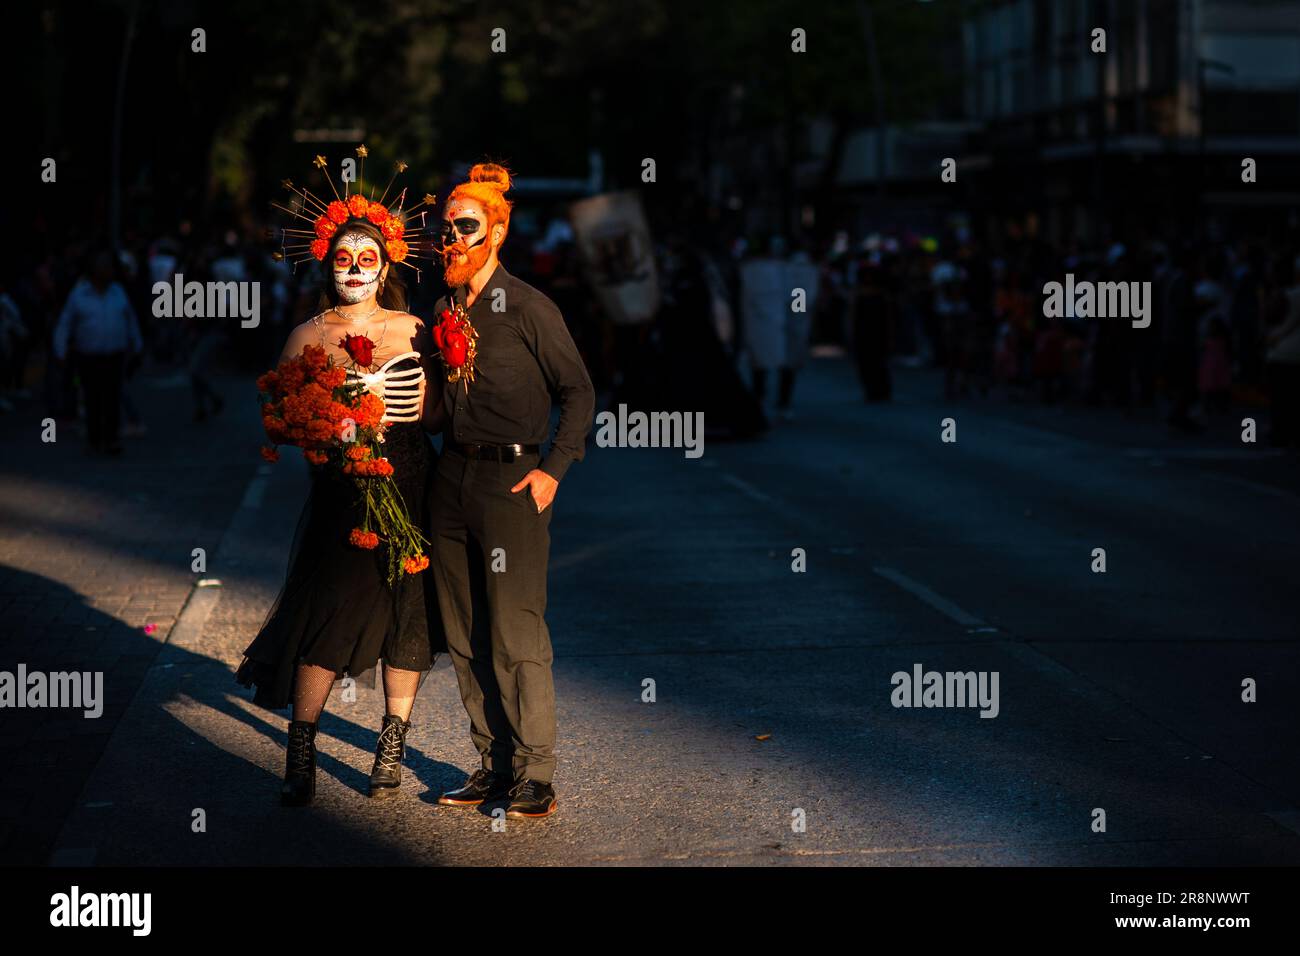 Una donna messicana, vestita come la Catrina, e un uomo messicano, vestita come Catrín, prendono parte ai festeggiamenti del giorno dei morti a Guadalajara, Messico. Foto Stock